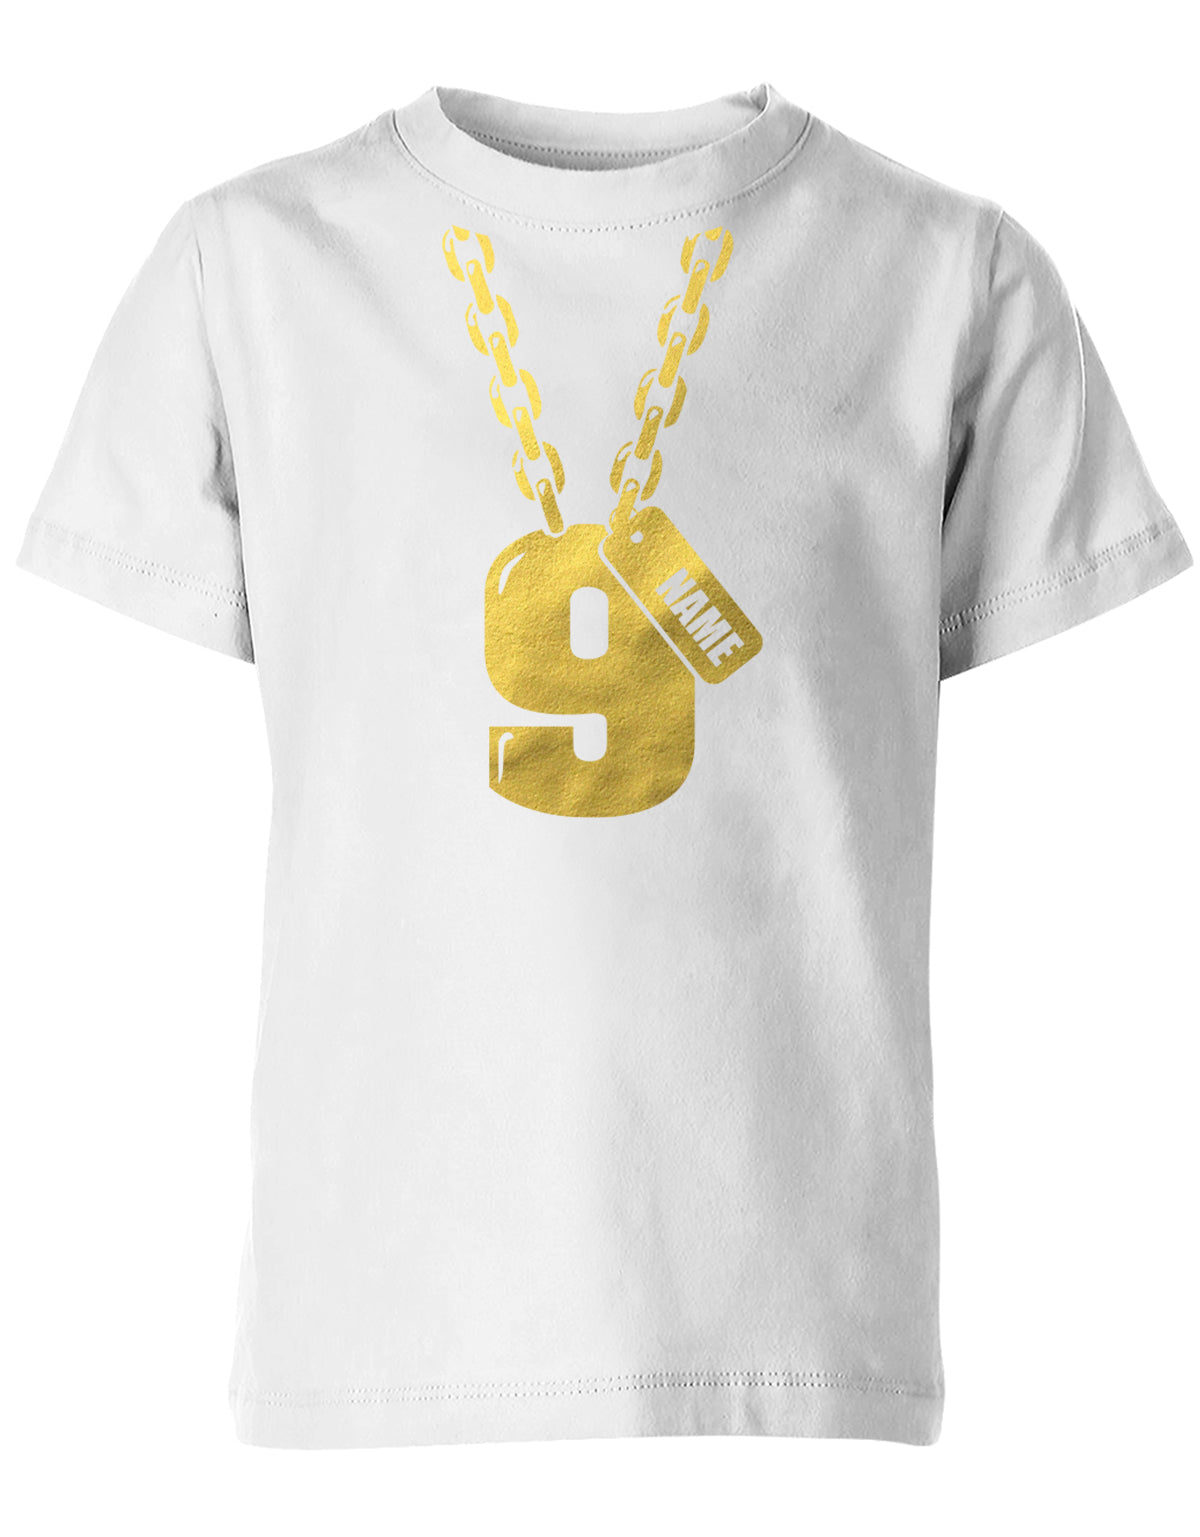 Geburtstags T-Shirt 9 Jahre Junge und Mädchen Goldene Kette 9 mit Name